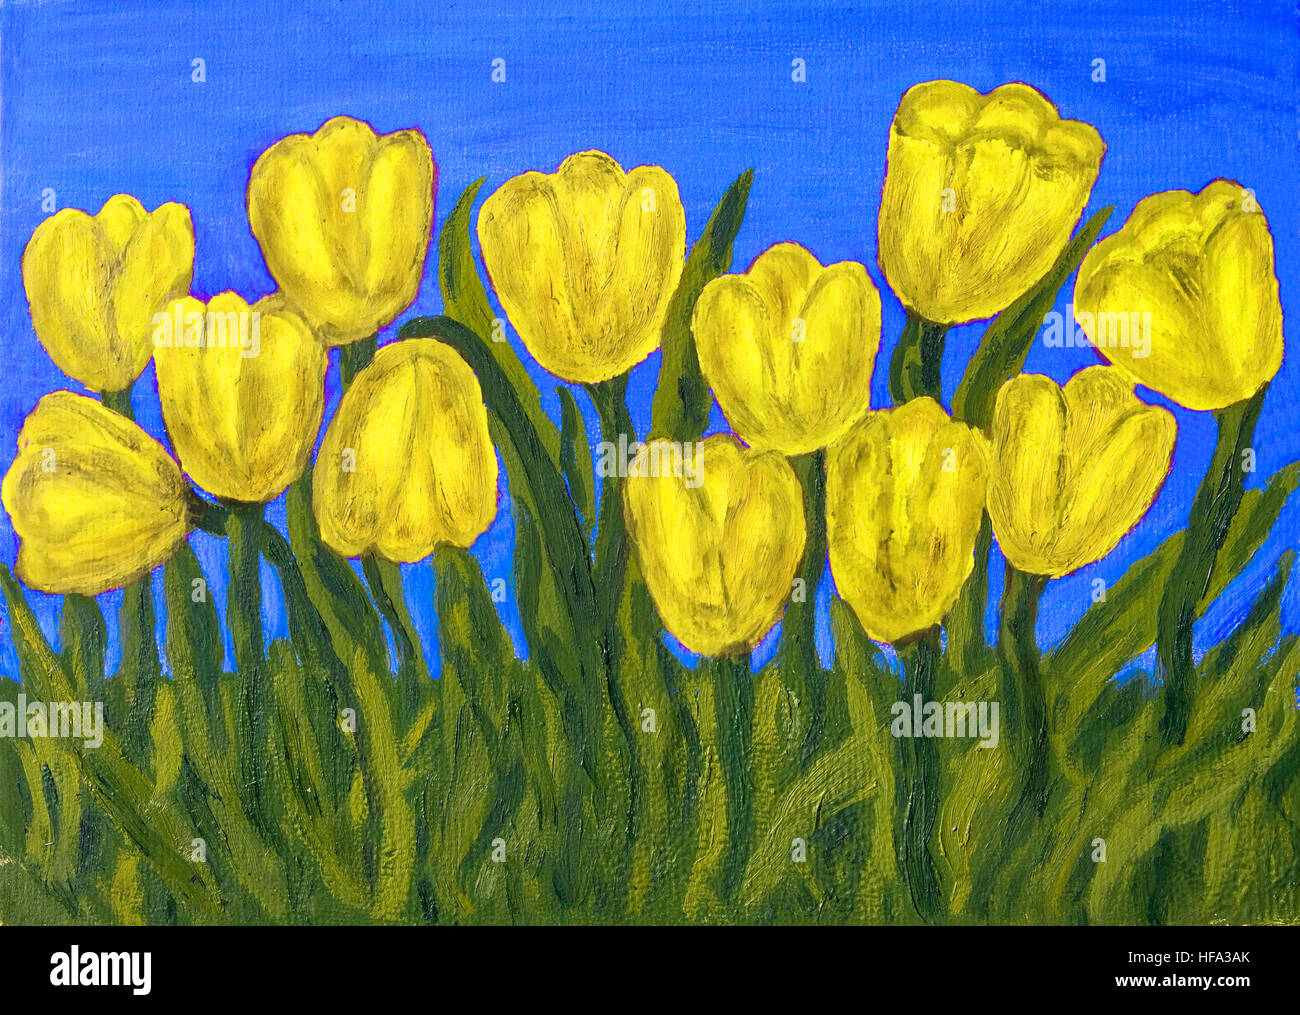 Photo peinte à la main, peinture à l'huile, tulipes jaune sur bleu ciel. Banque D'Images